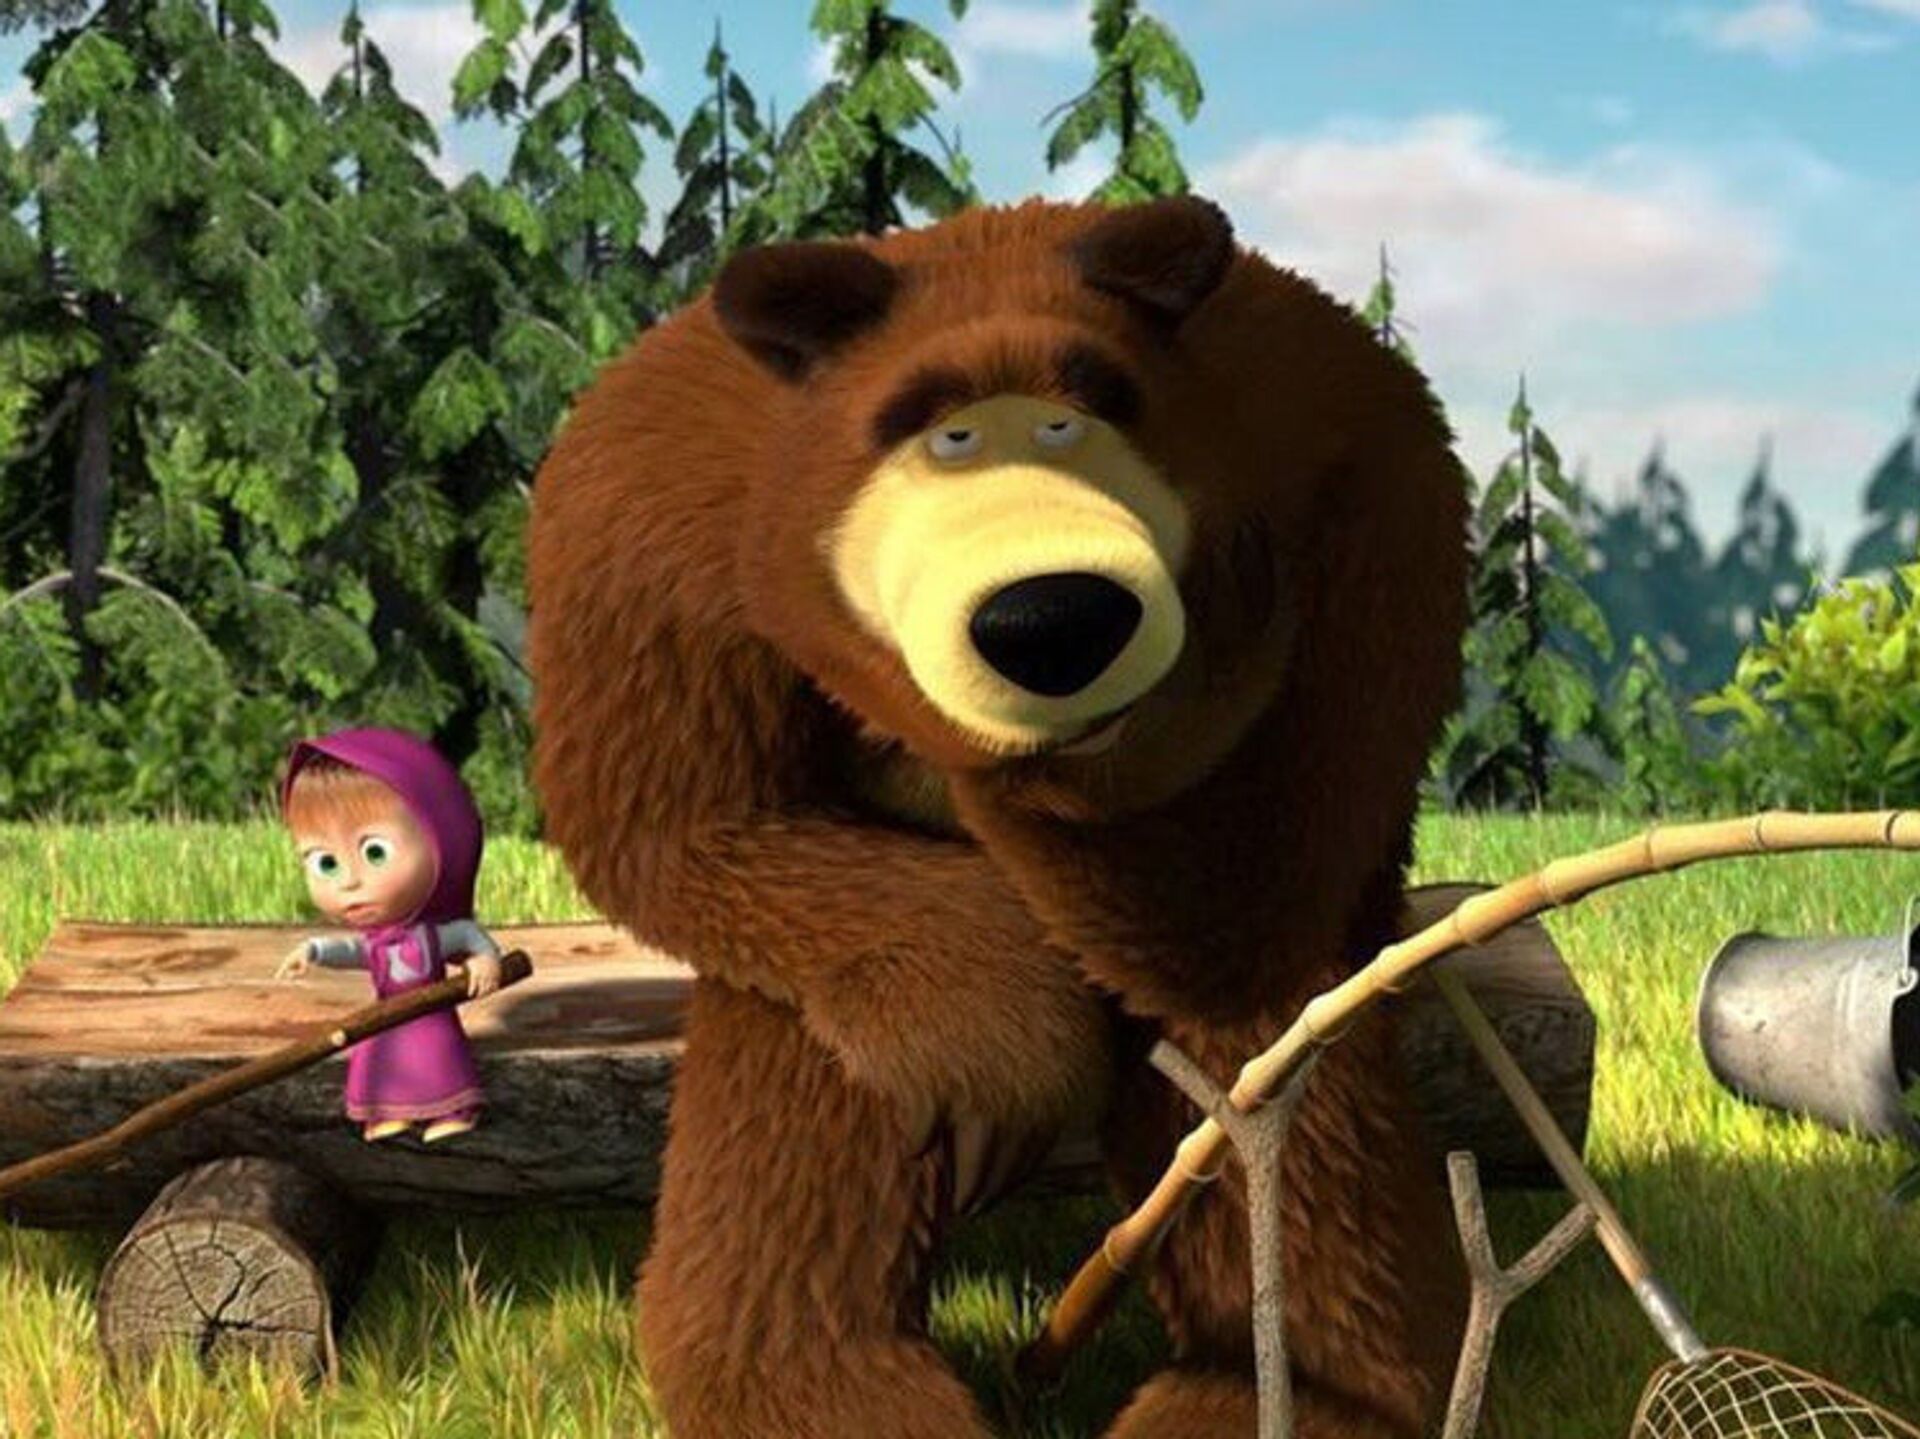 Phim Hoạt Hình Gấu Masha: Cuộc Phiêu Lưu Kỳ Diệu Của Cô Bé Masha và Chú Gấu Xiếc